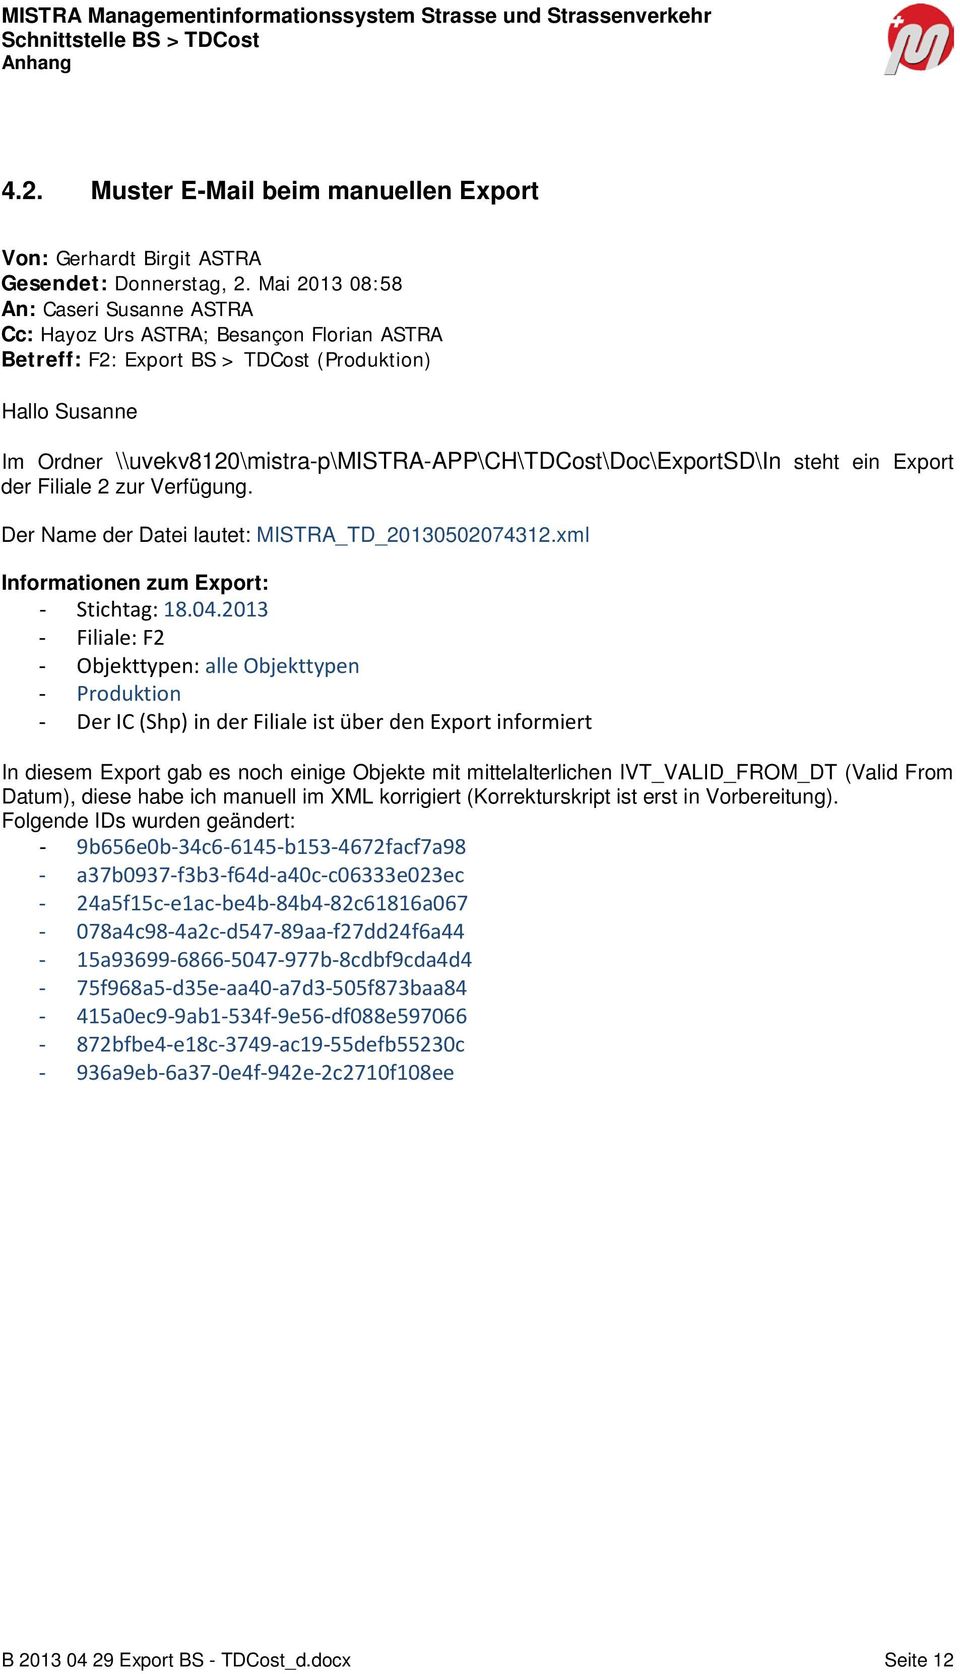 \\uvekv8120\mistra-p\mistra-app\ch\tdcost\doc\exportsd\in steht ein Export der Filiale 2 zur Verfügung. Der Name der Datei lautet: MISTRA_TD_20130502074312.